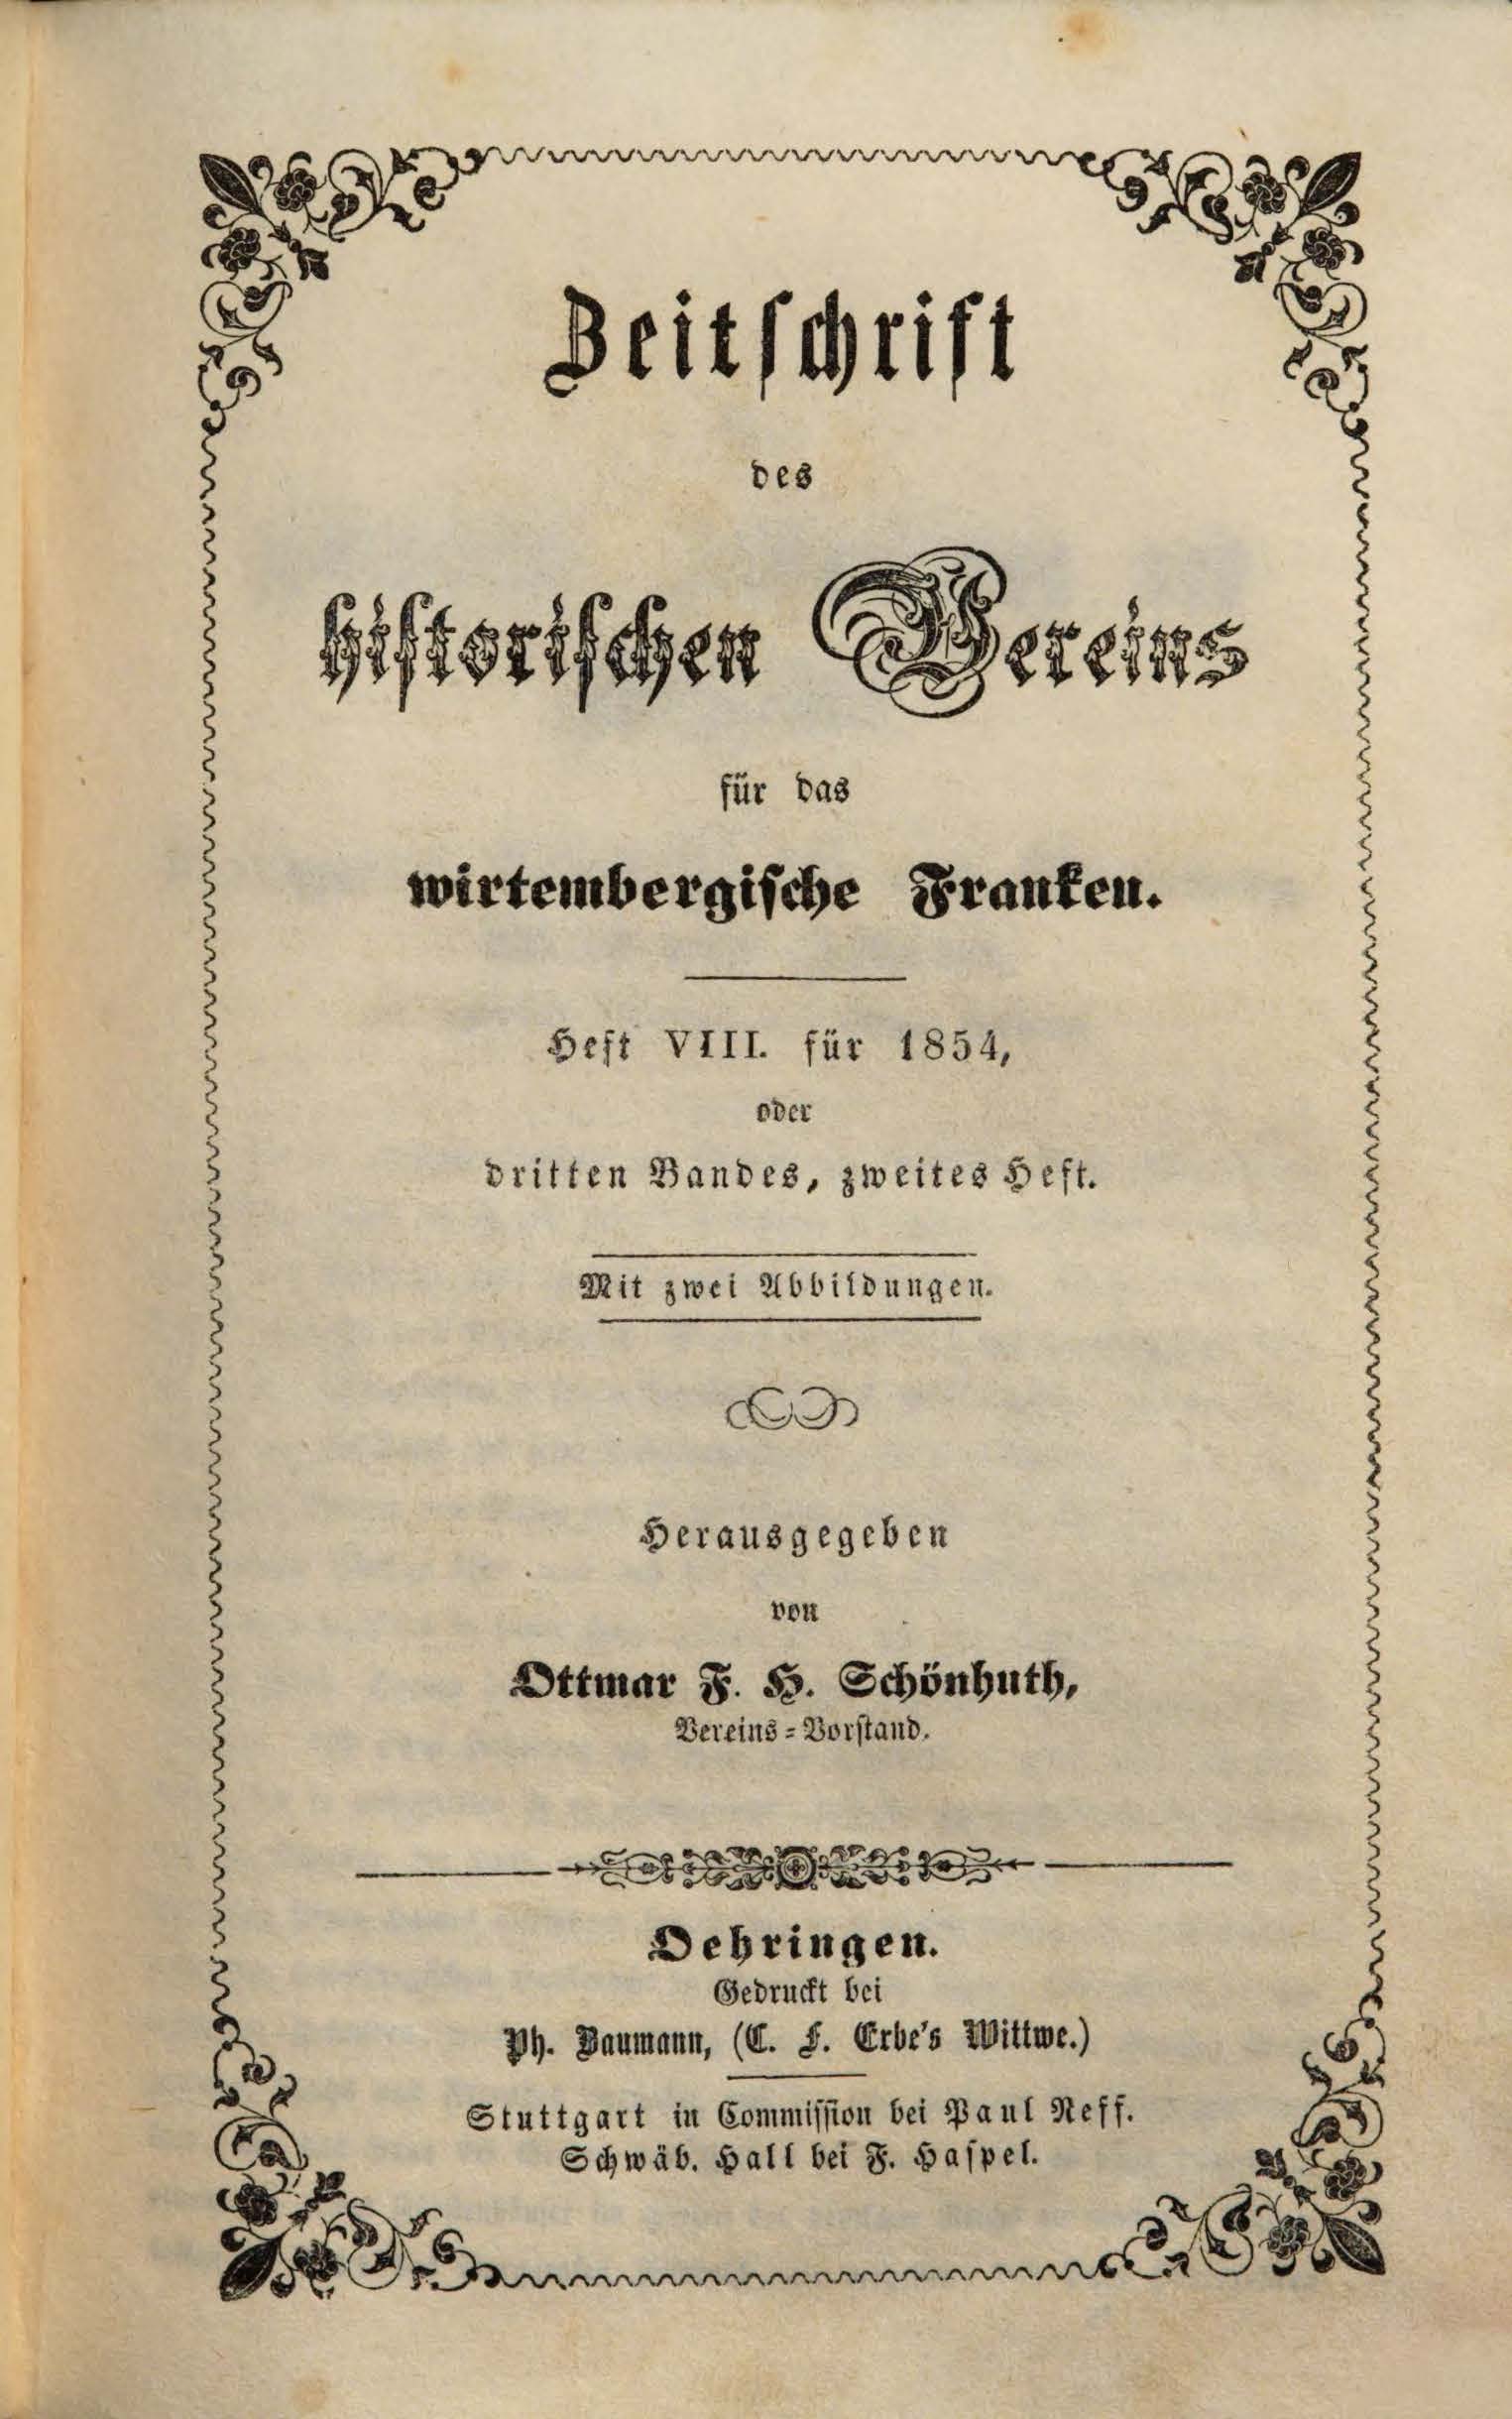                     Ansehen Bd. 3 Nr. 2 (1854): Zeitschrift des Historischen Vereins für das Württembergische Franken
                